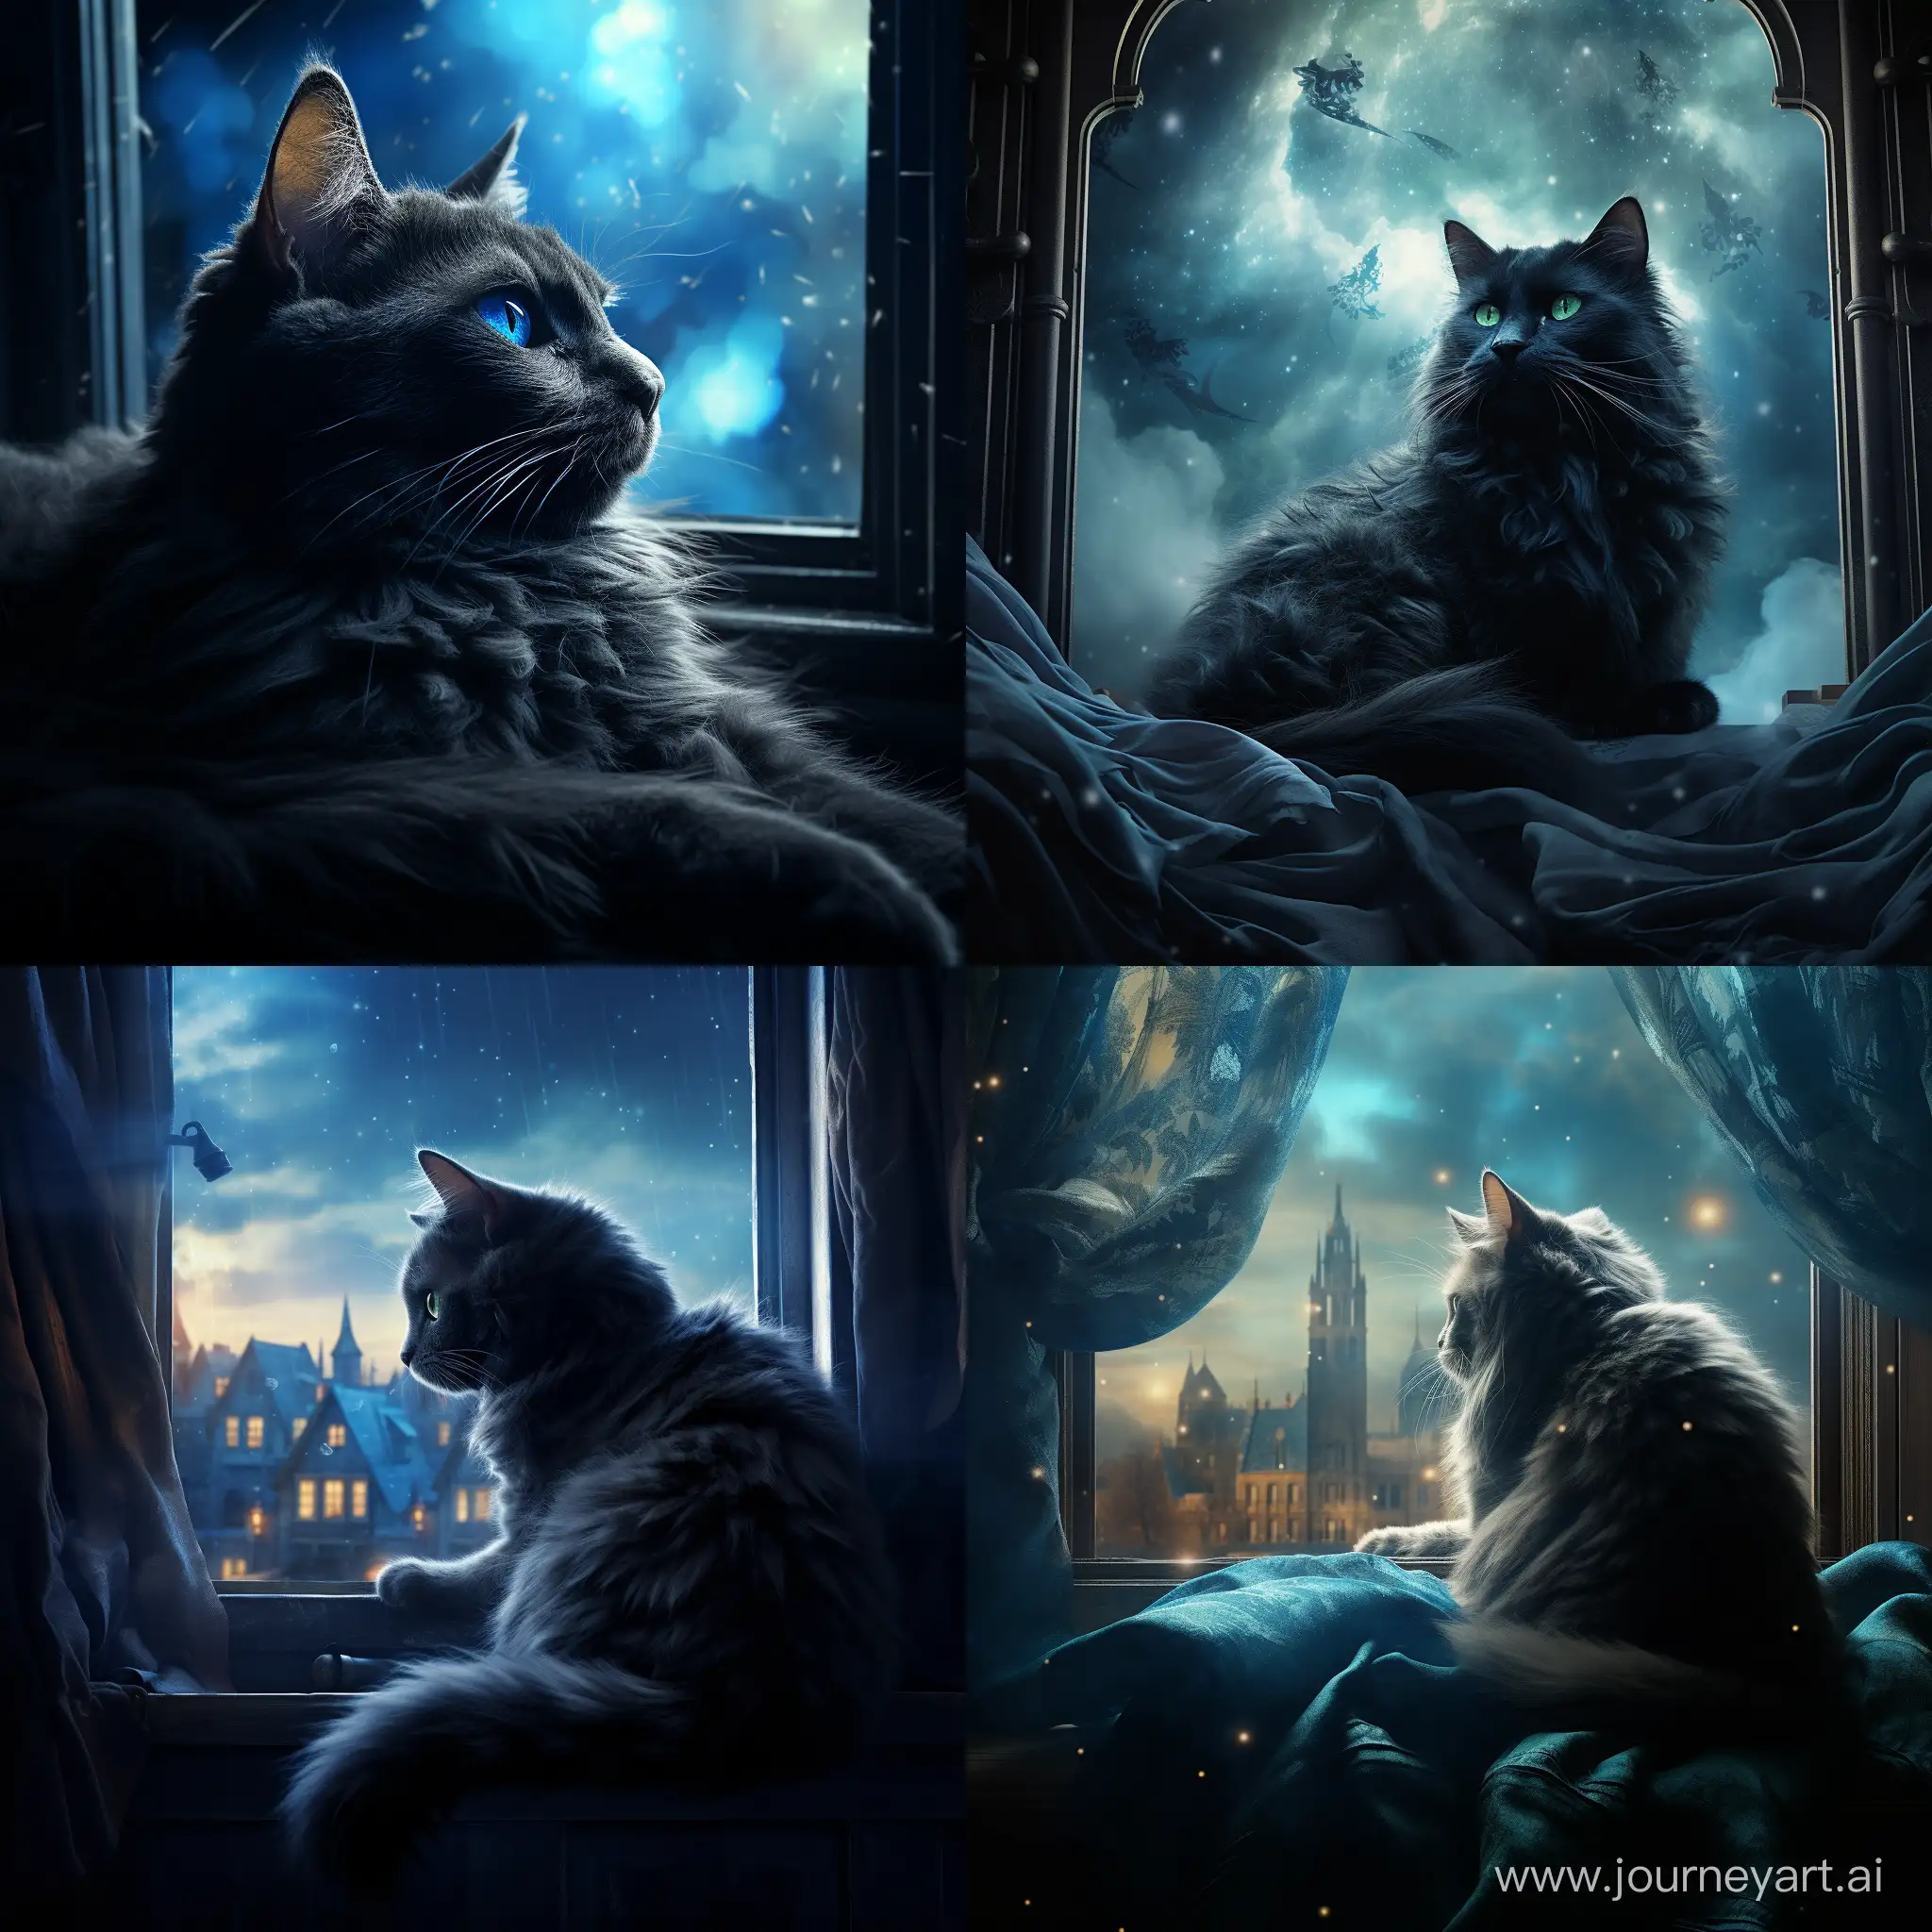 movie poster fantasy dramatic, ::1.1, голубая кошка с черными узорами лежит на фоне окна, свет проникает через окна отбрасывая блики на кошку